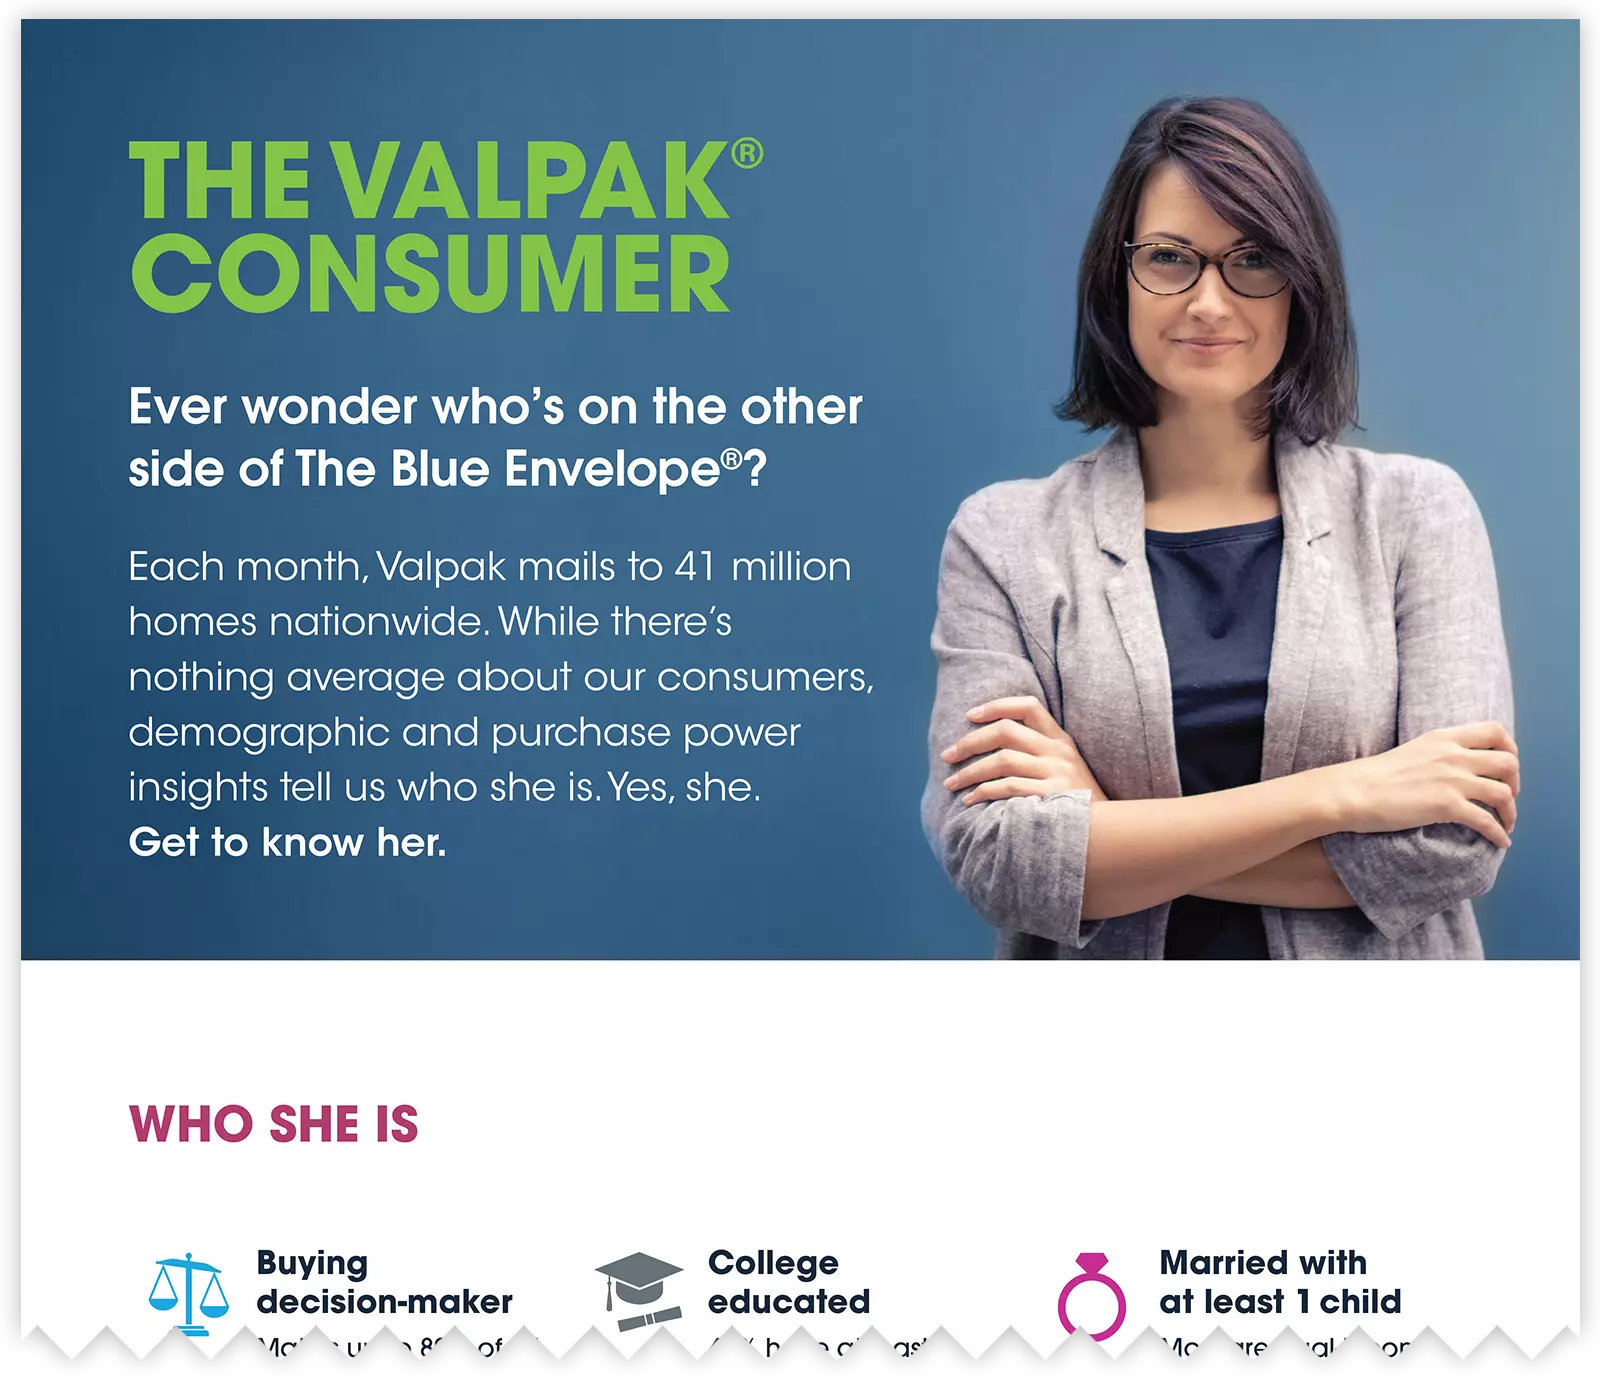 Valpak consumer infographic